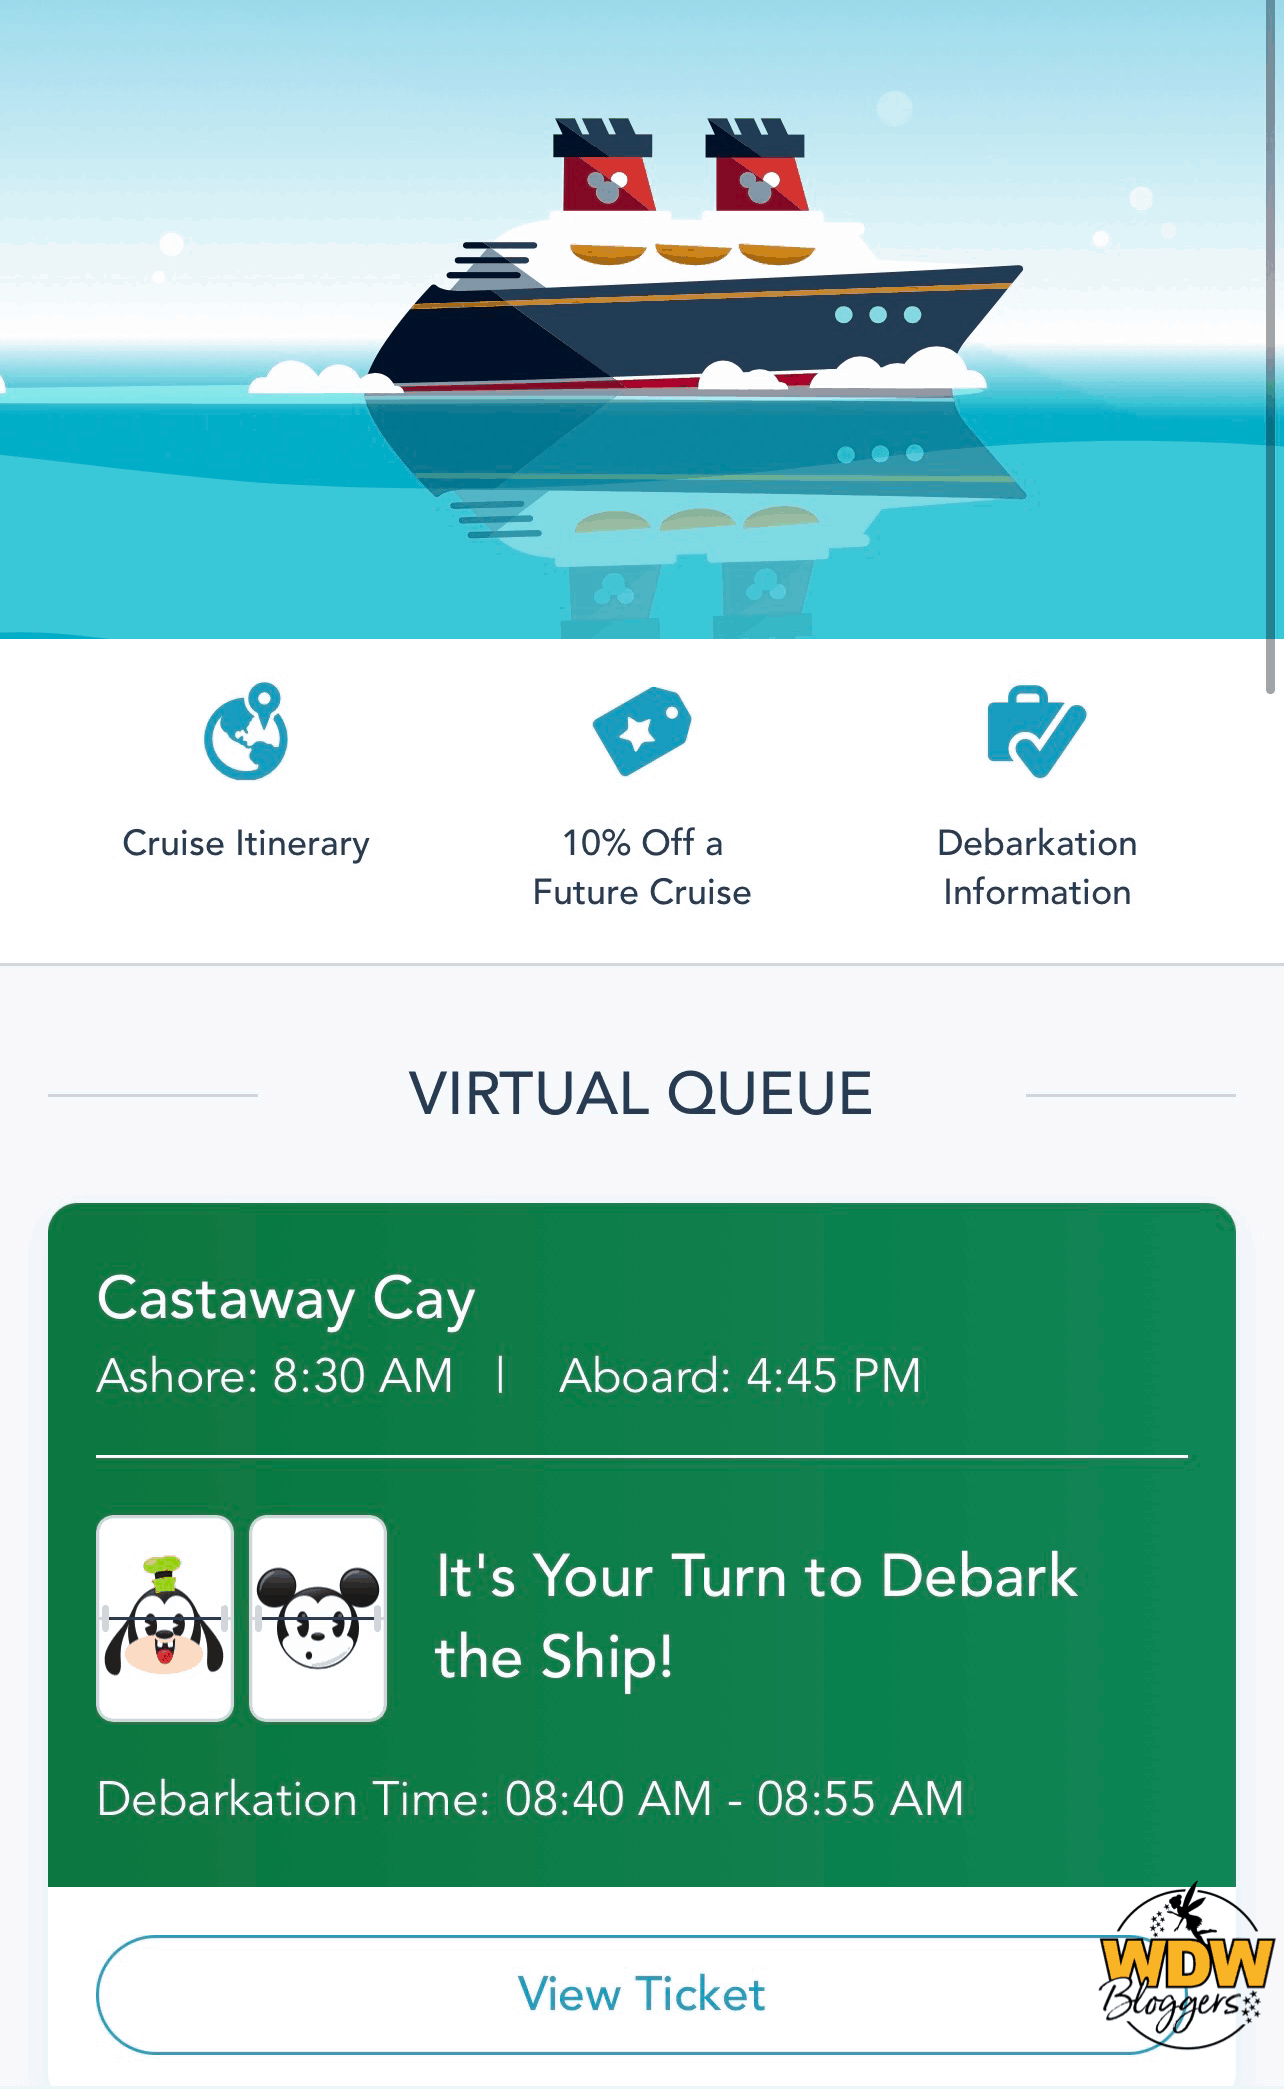 Disney-Cruise-Line-Castaway-Cay-Virtual-Queue-4